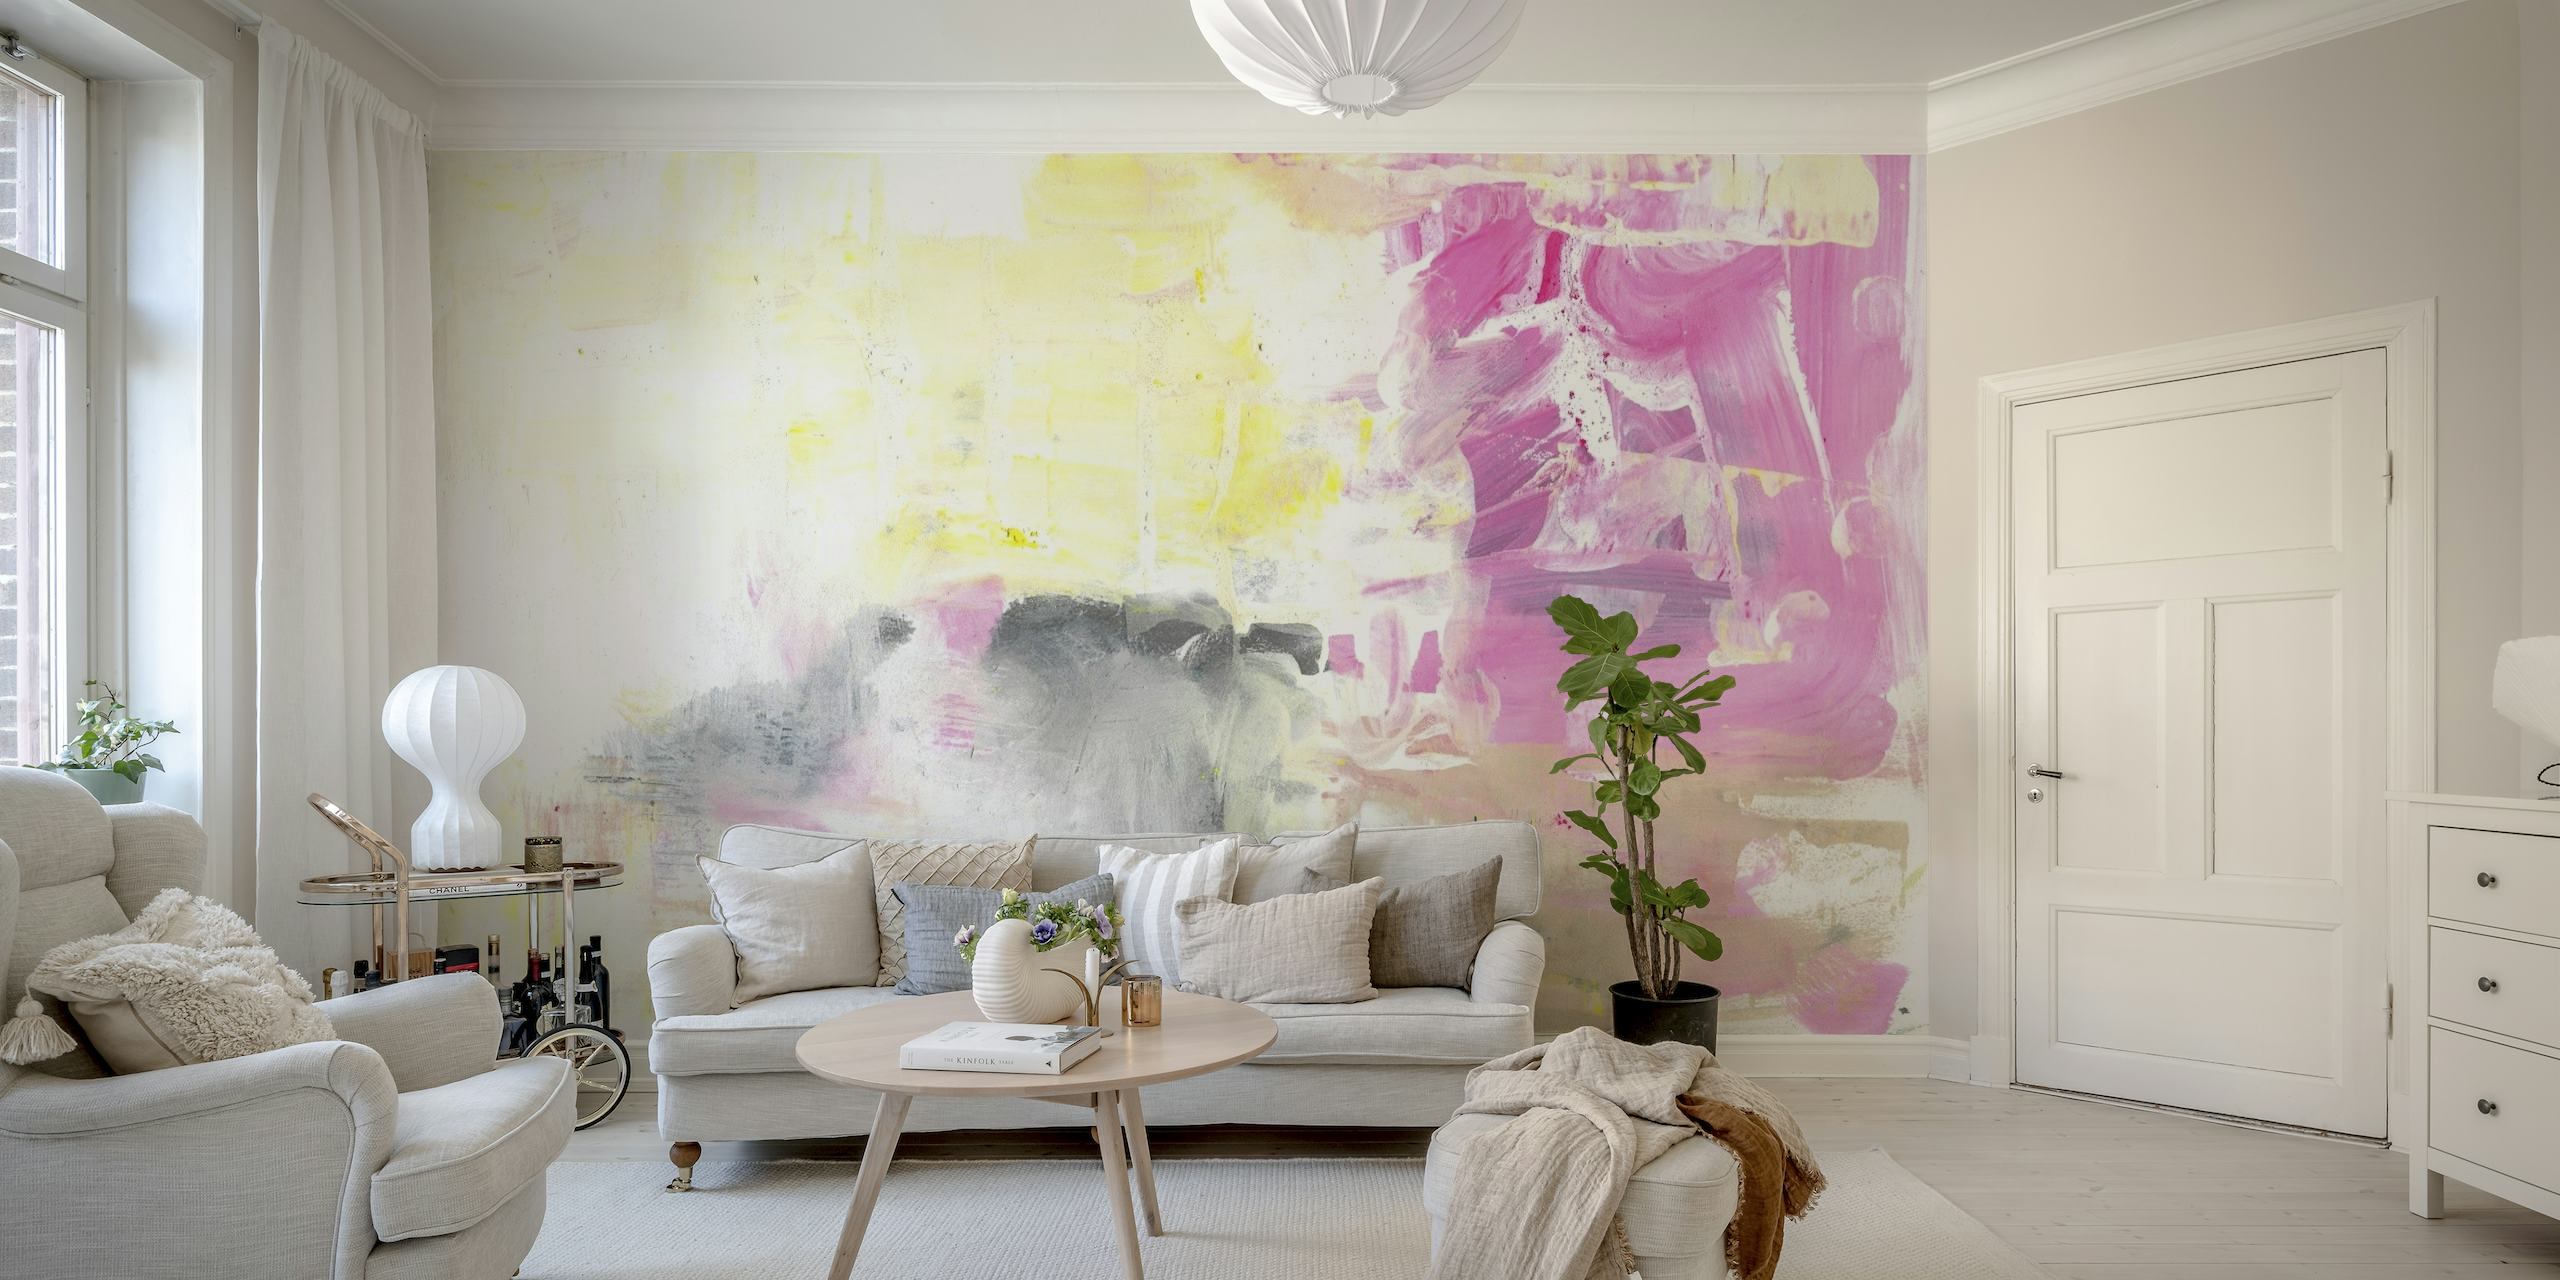 Mural de pared Abstract Painting No. 17 con suaves tonos rosa, gris y blanco con pinceladas expresivas